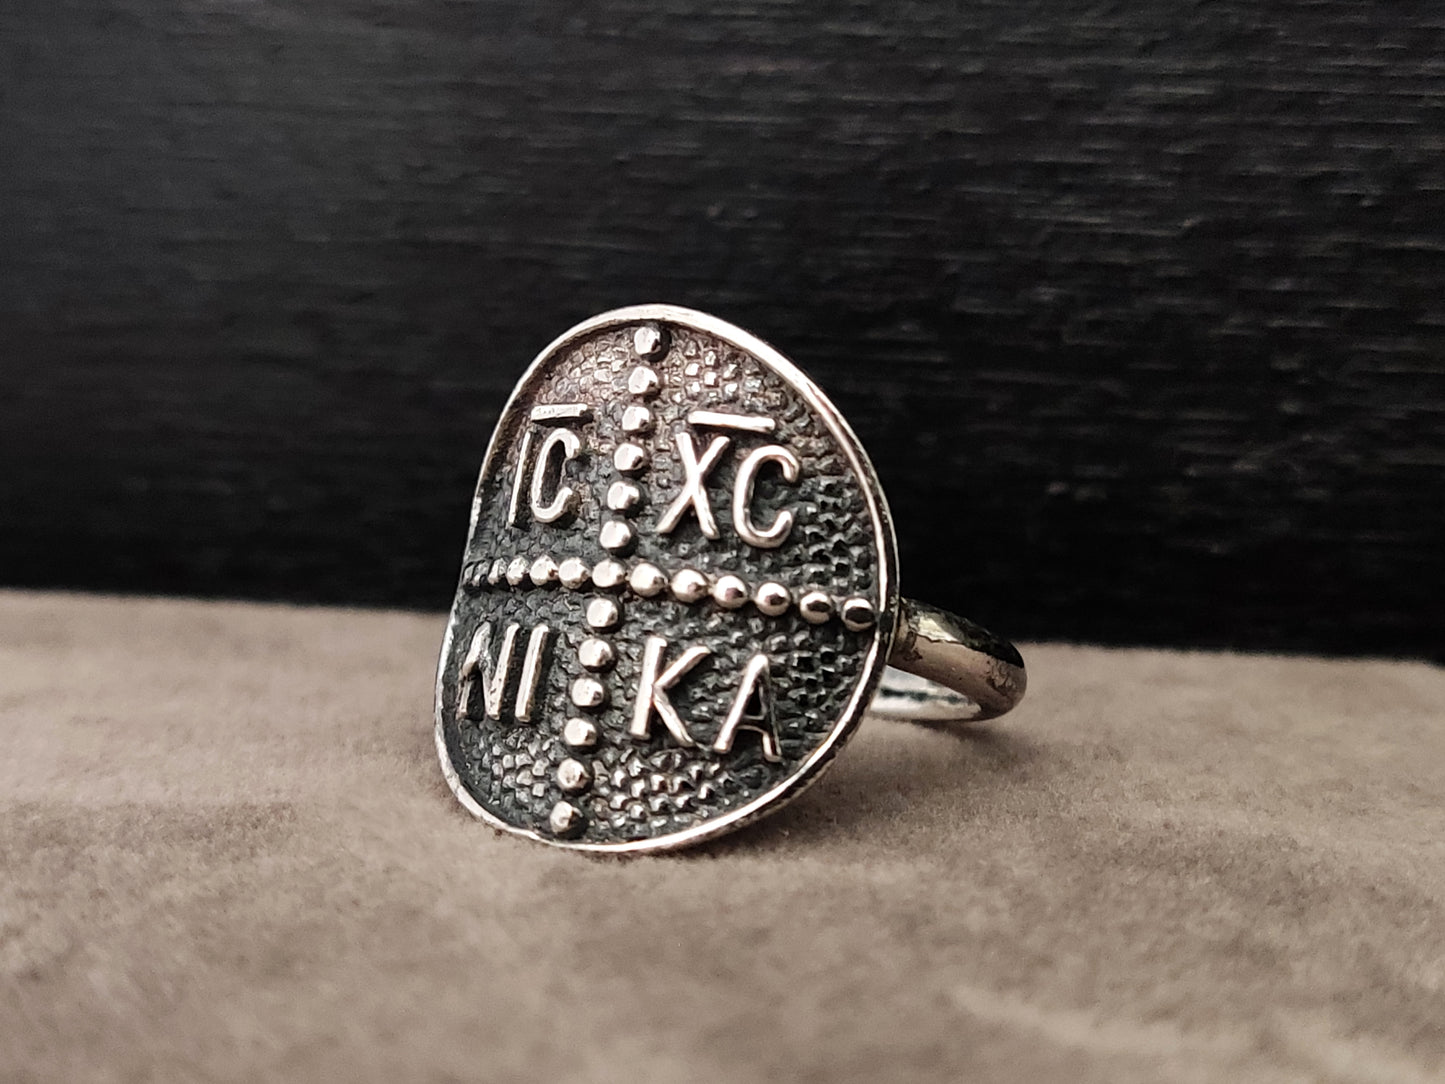 Griechisch-byzantinischer ICXC NIKA Kreuz Silberring 19mm